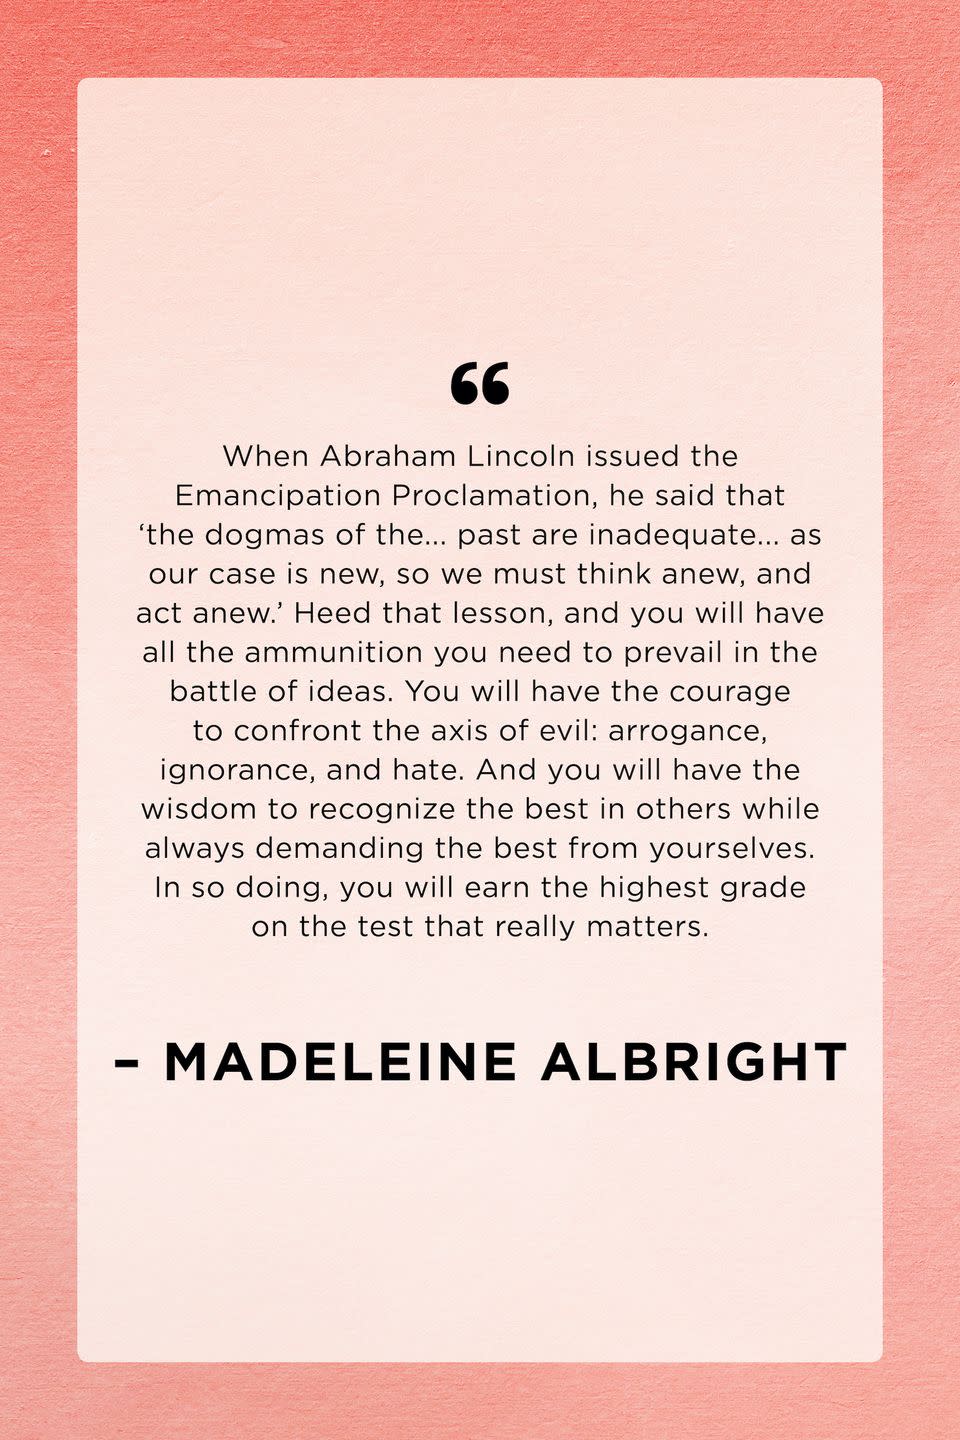 Madeleine Albright, Knox College